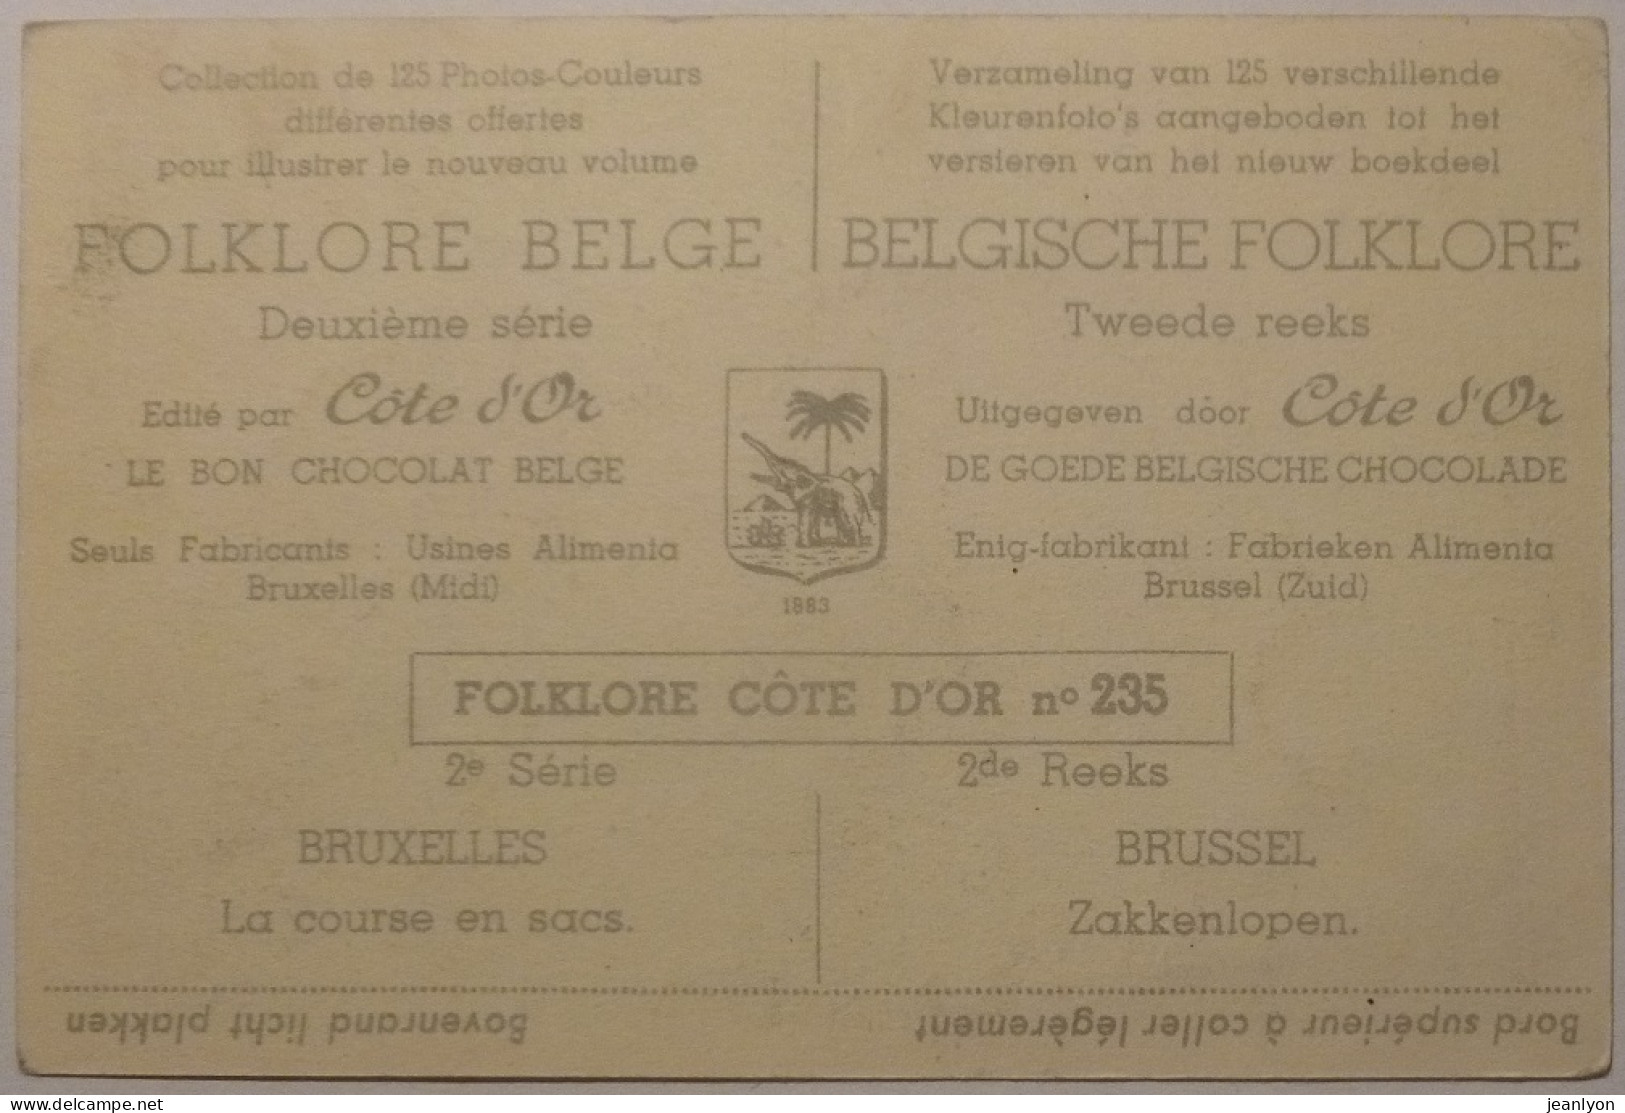 ENFANT - Course En Sacs / BRUXELLES En Belgique - Image Chocolat Cote D'Or / Folklore Belge - Côte D'Or